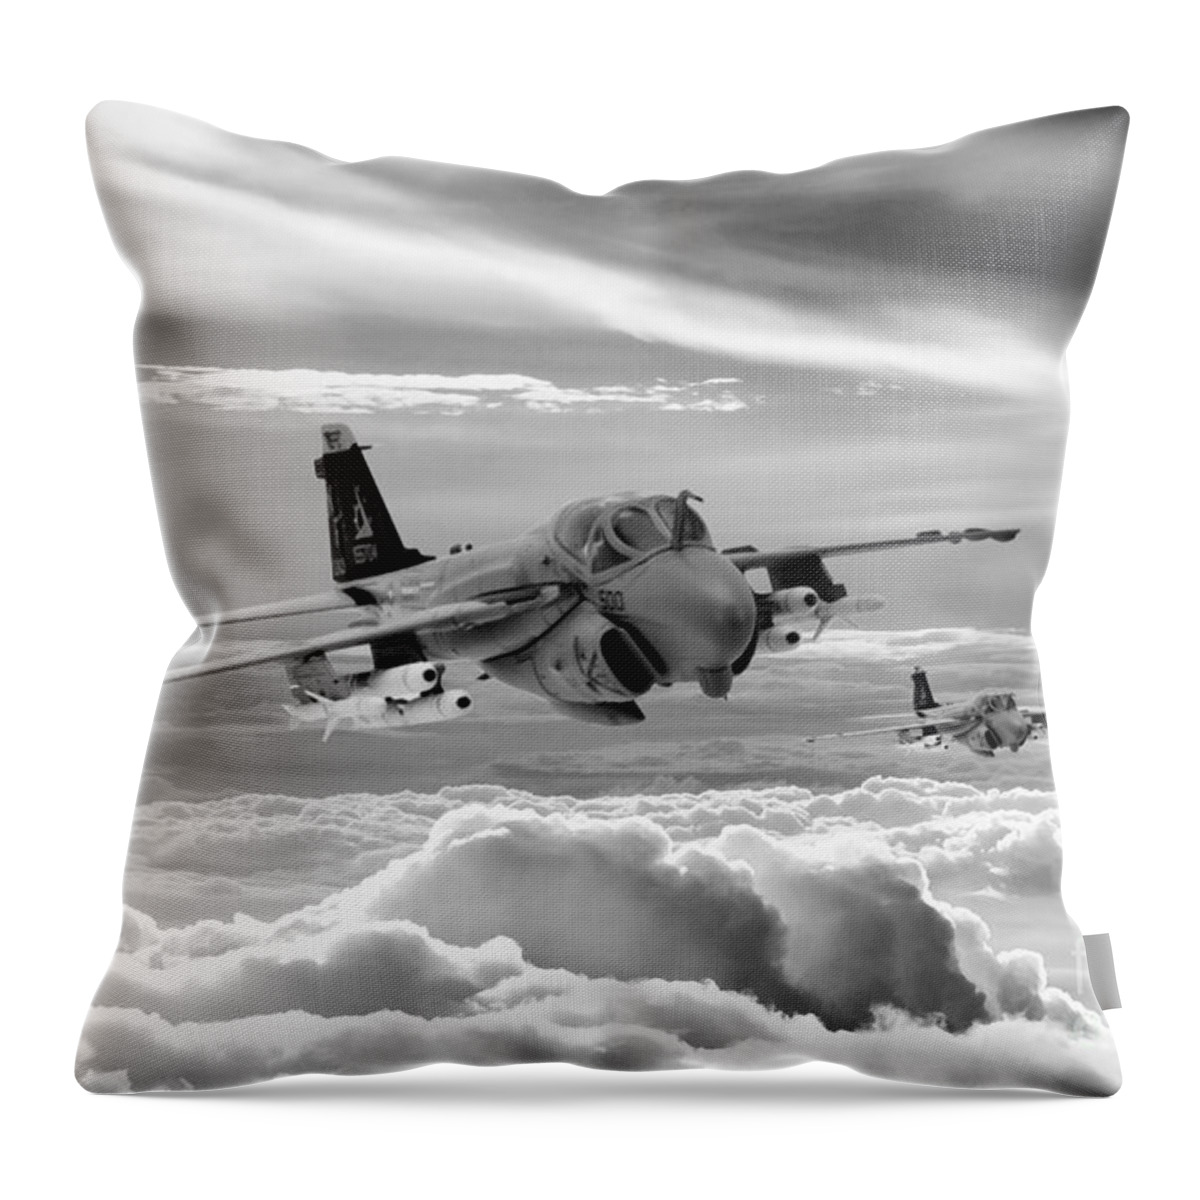 A6 Intruder Throw Pillow featuring the digital art Intruder by Airpower Art